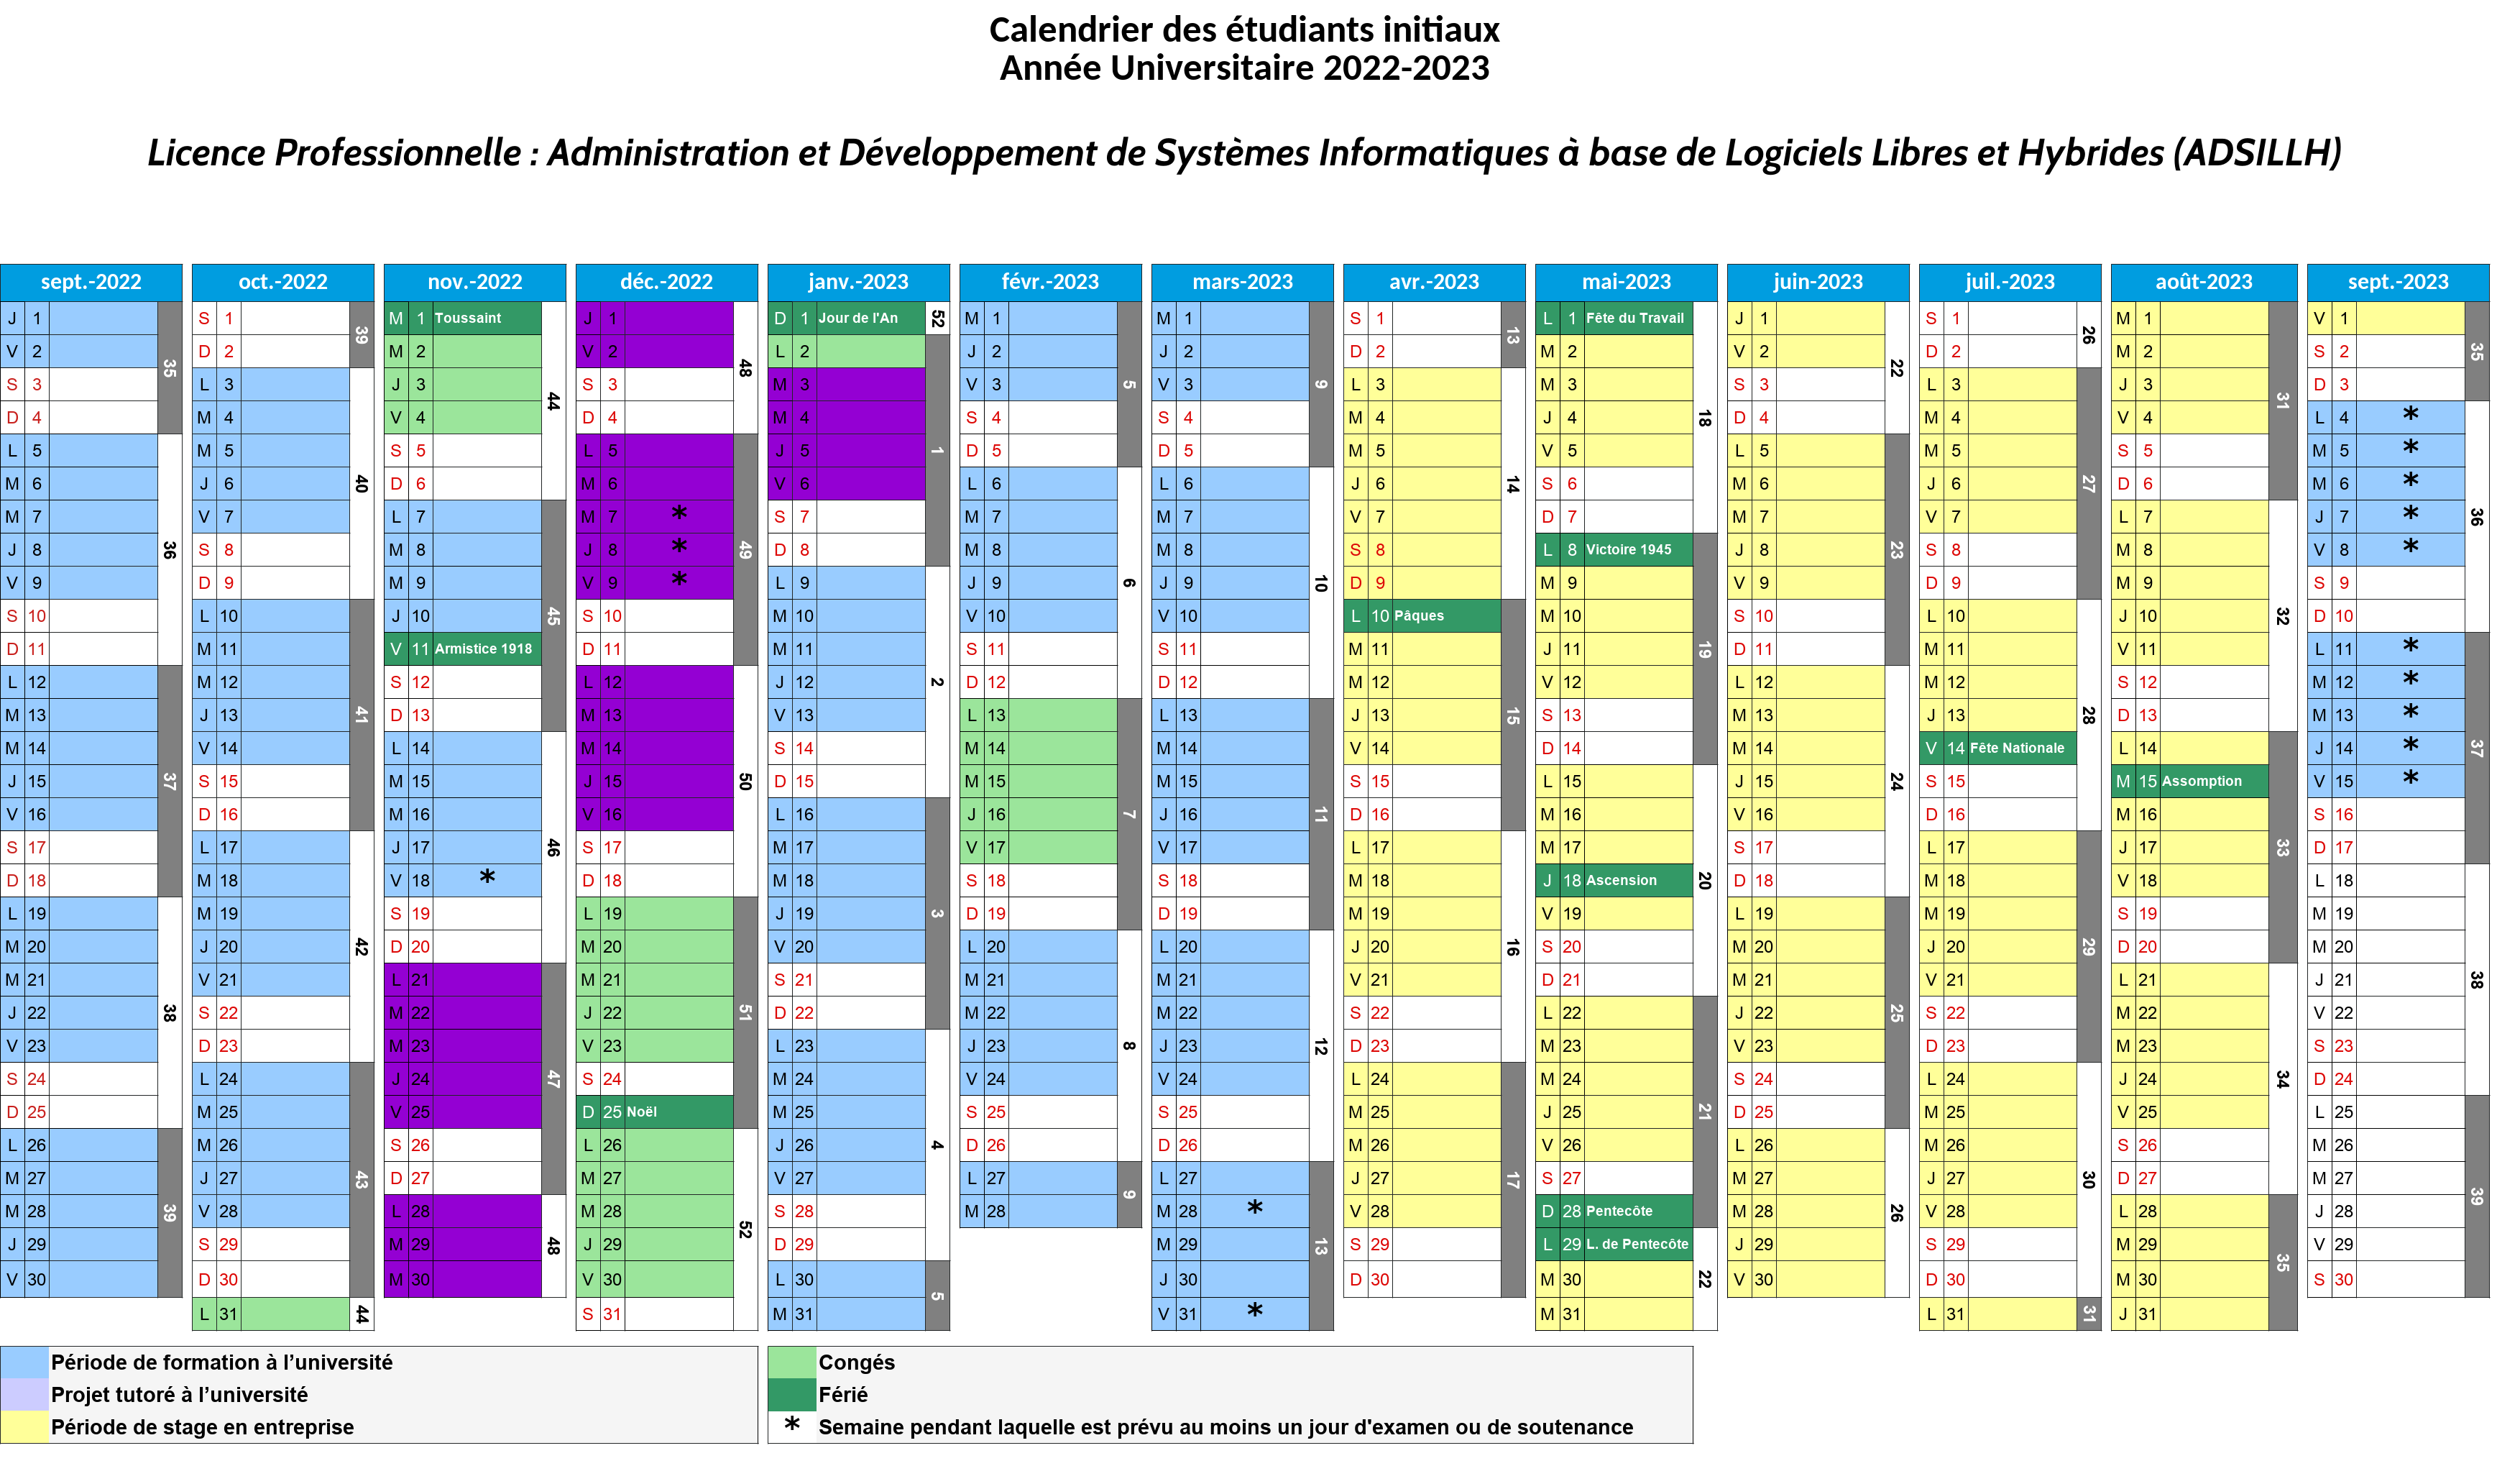 Calendrier prévisionnel (2022-2023) [alternance 1]